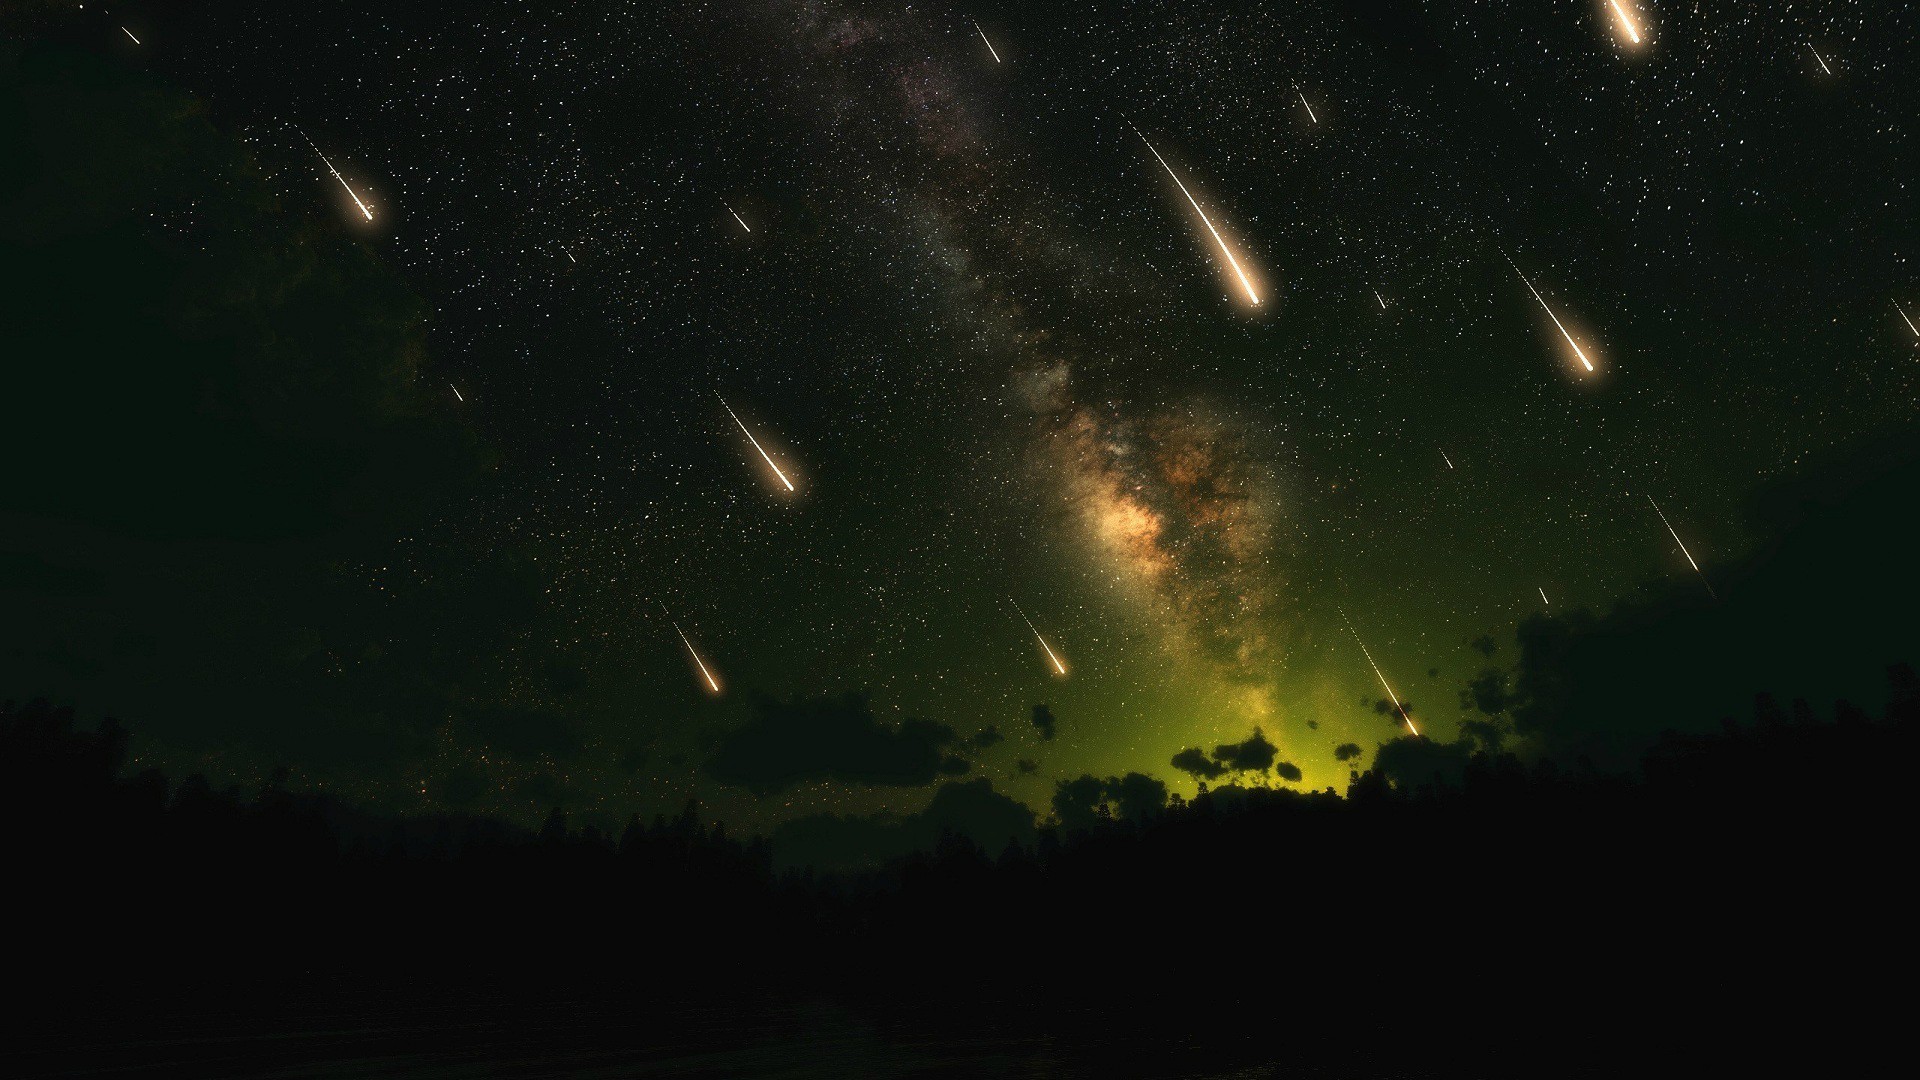 General 1920x1080 digital art shooting stars star trails stars space forest night comet dark